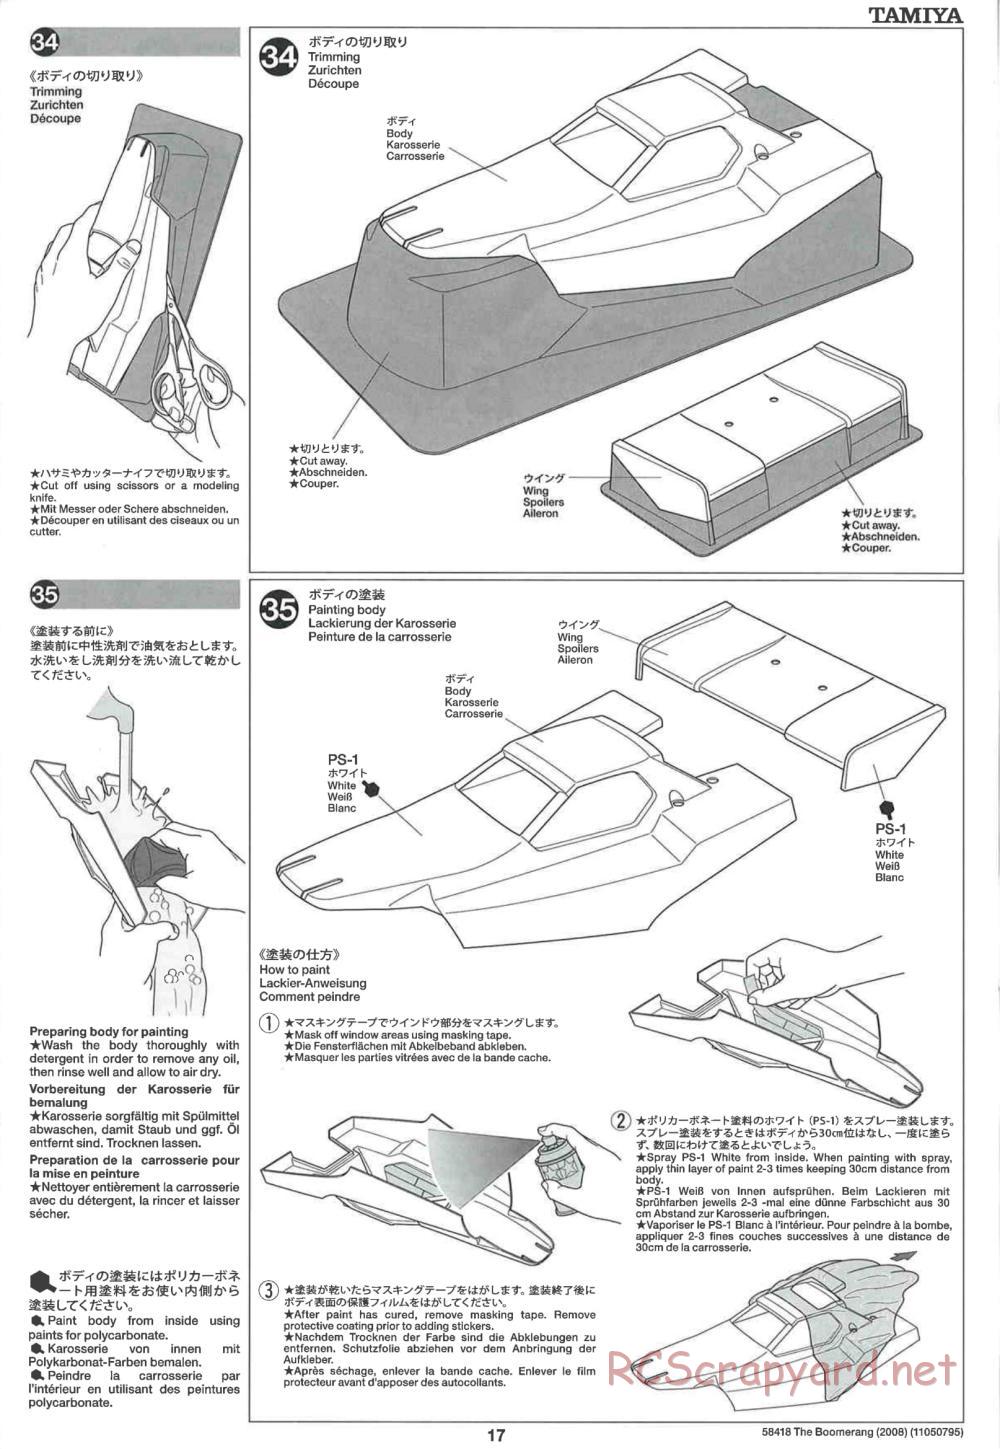 Tamiya - The Boomerang 2008 Chassis - Manual - Page 17